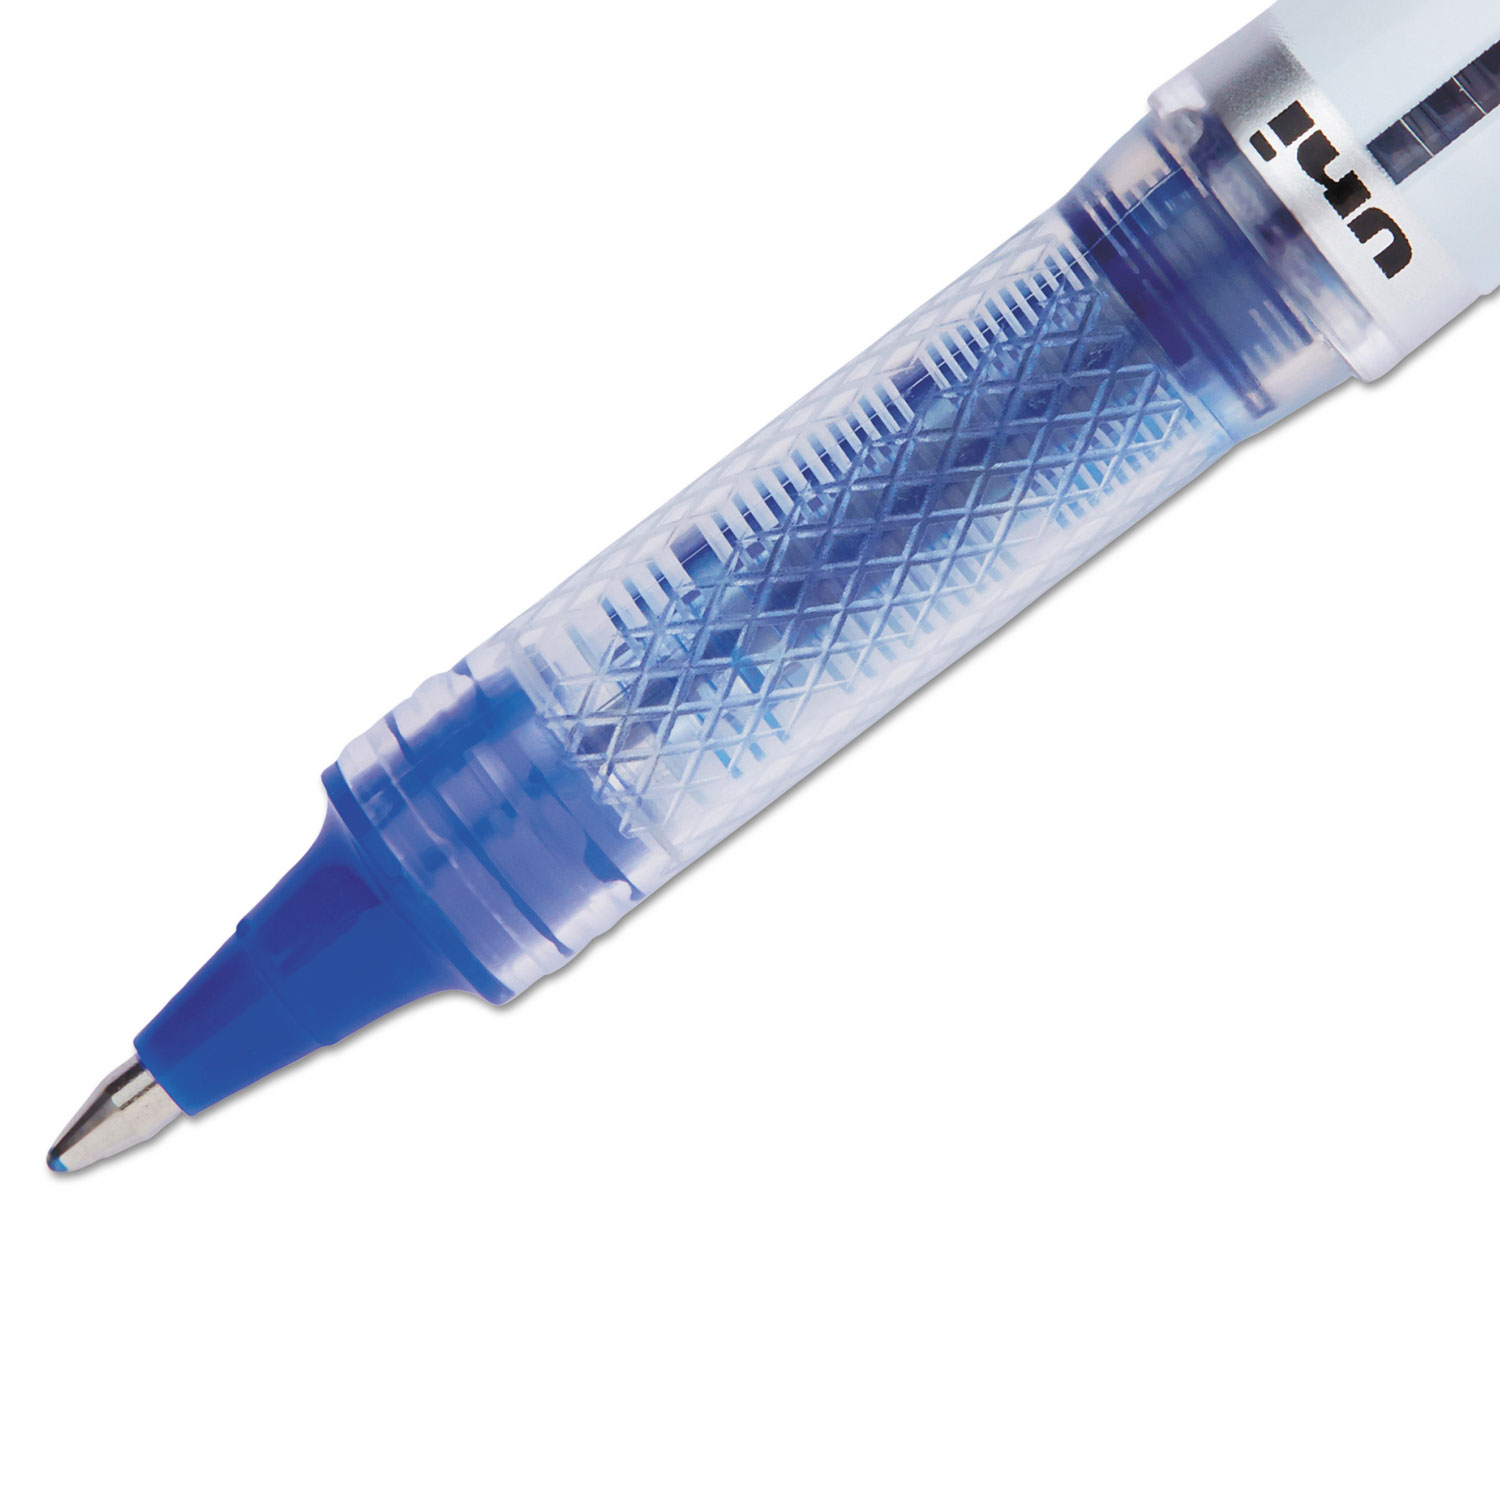 VISION ELITE Roller Ball Stick Waterproof Pen, Blue Ink, Bold